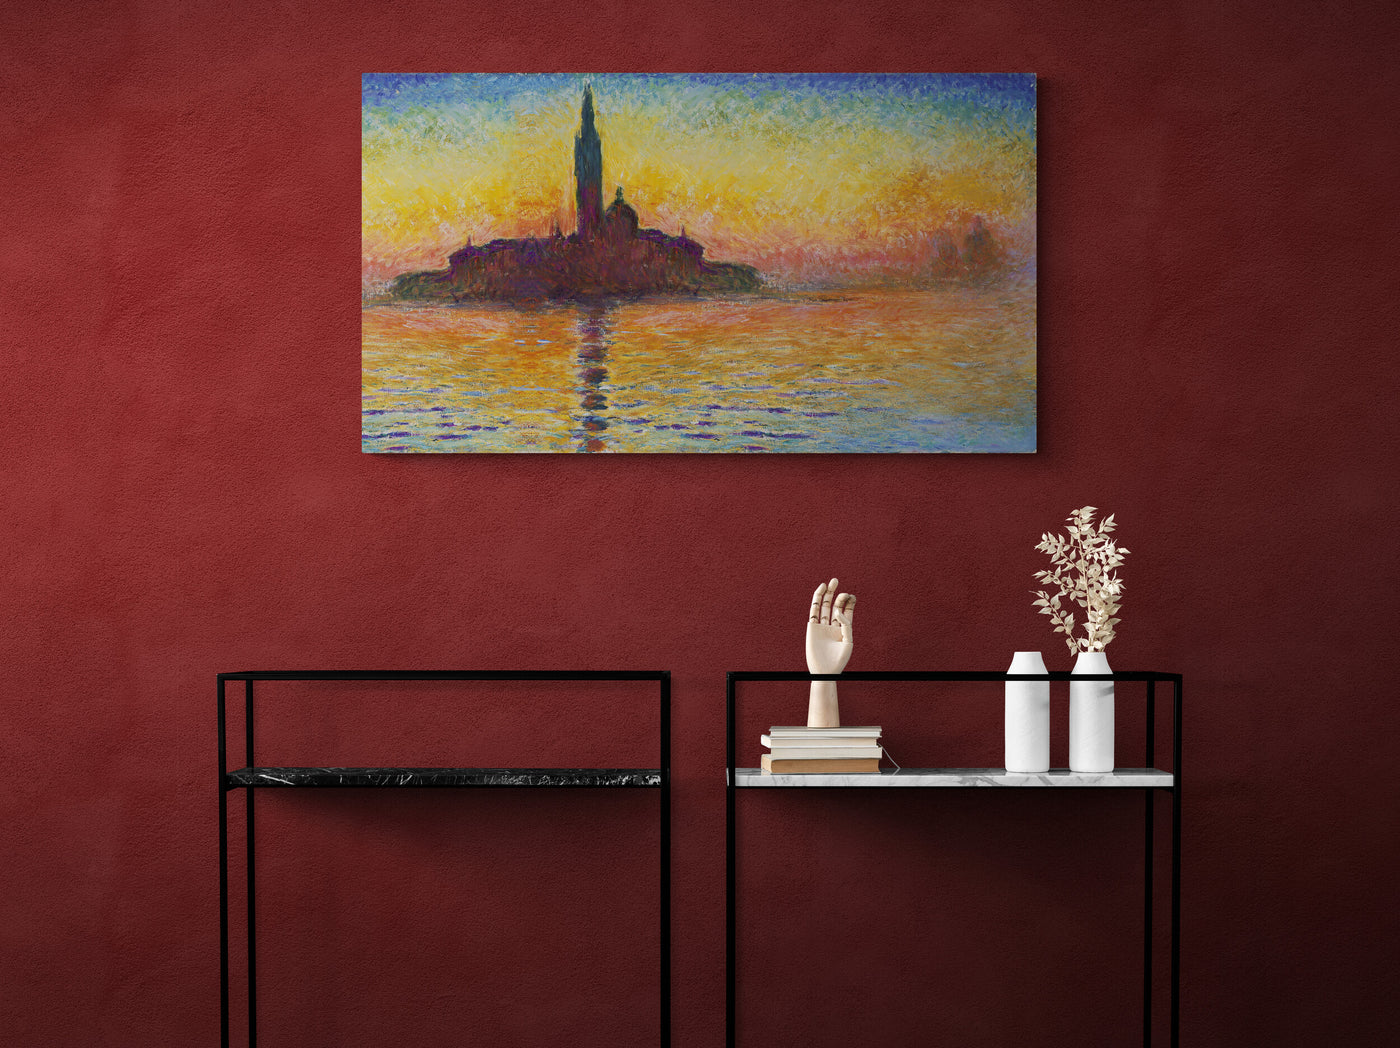 Claude Monet, Saint-Georges majeur au crépuscule